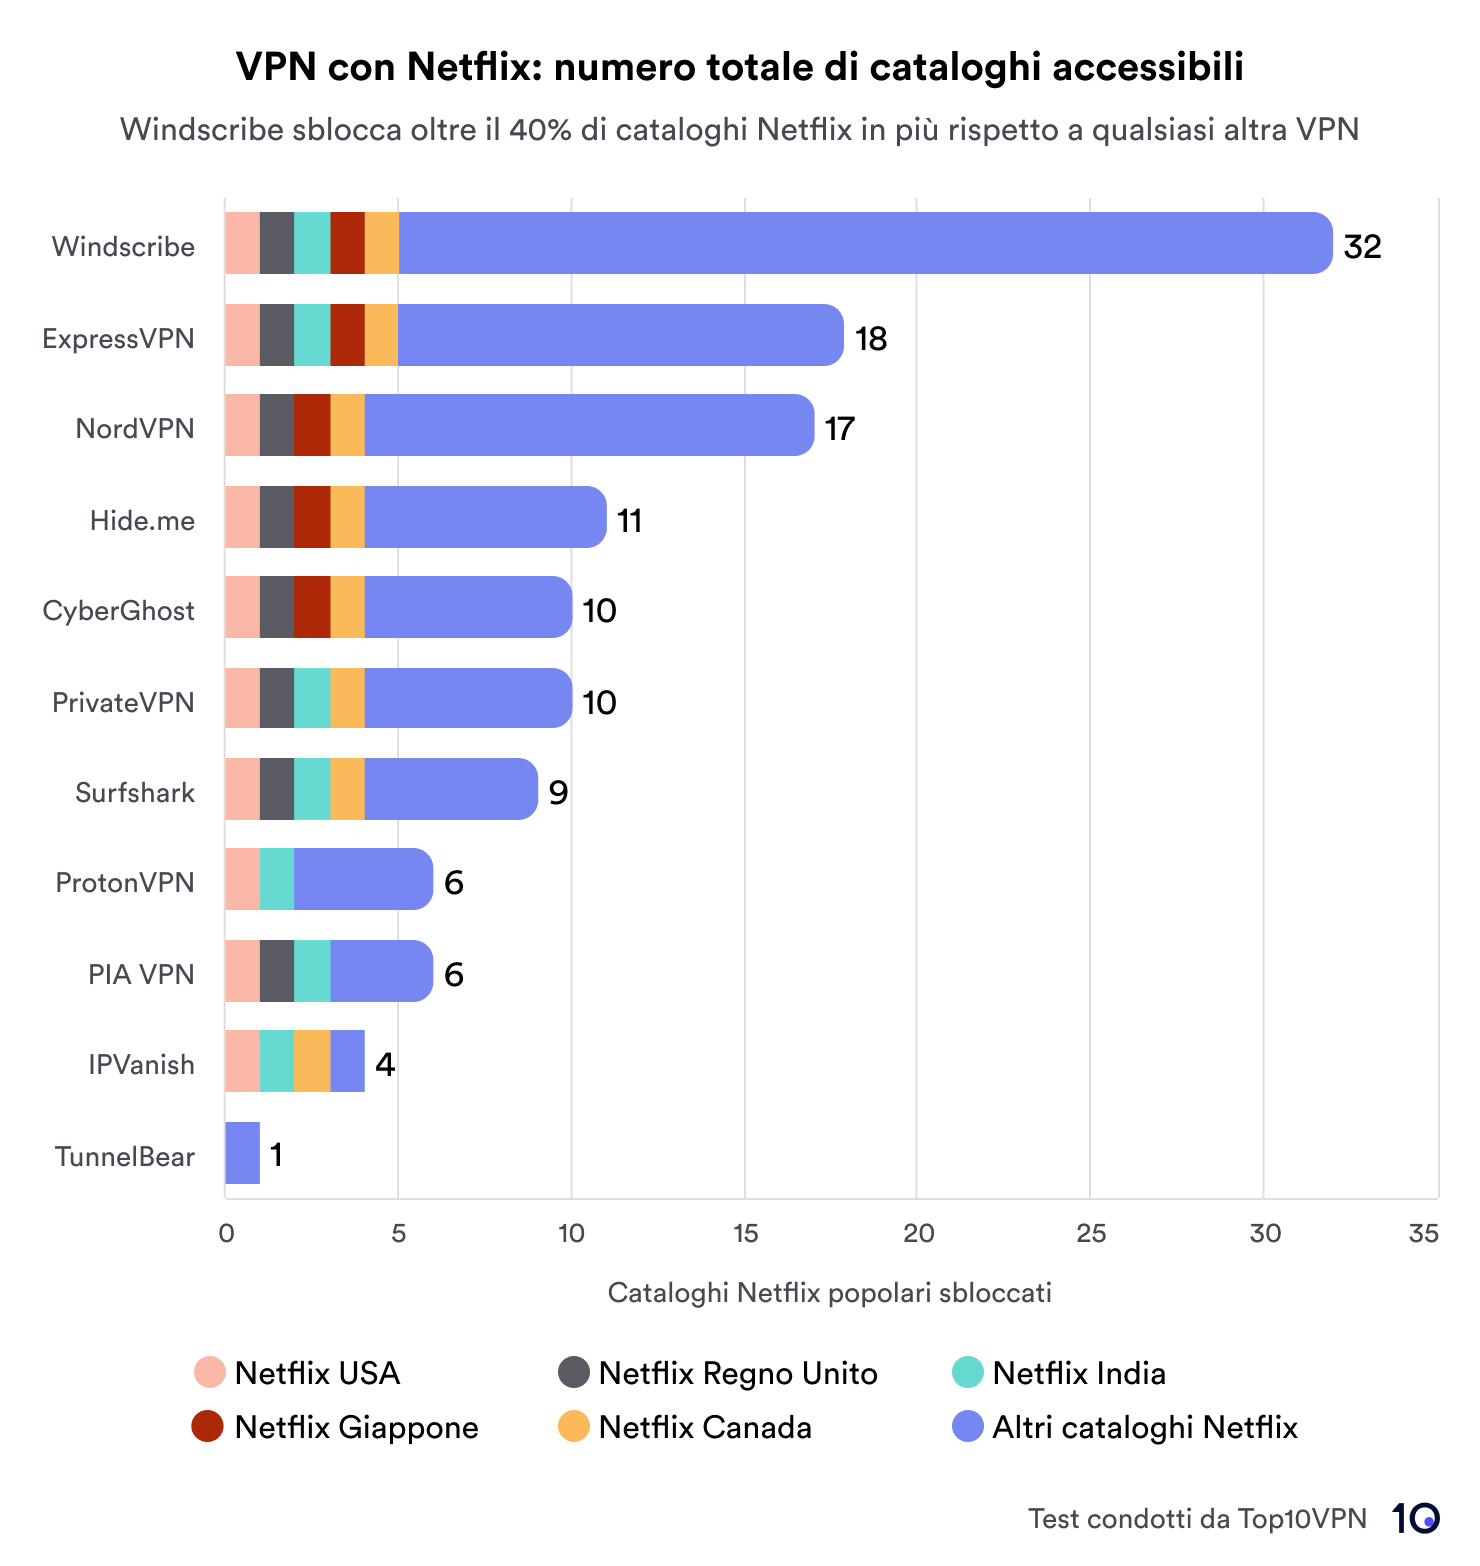 Grafico a barre che confronta i servizi VPN in base al numero totale di librerie Netflix a cui si accede. Windscribe è in testa con 32 librerie, seguito da ExpressVPN e NordVPN rispettivamente con 18 e 17. Il grafico include una chiave che indica regioni come Stati Uniti, Regno Unito, Giappone, Canada, India e altri.